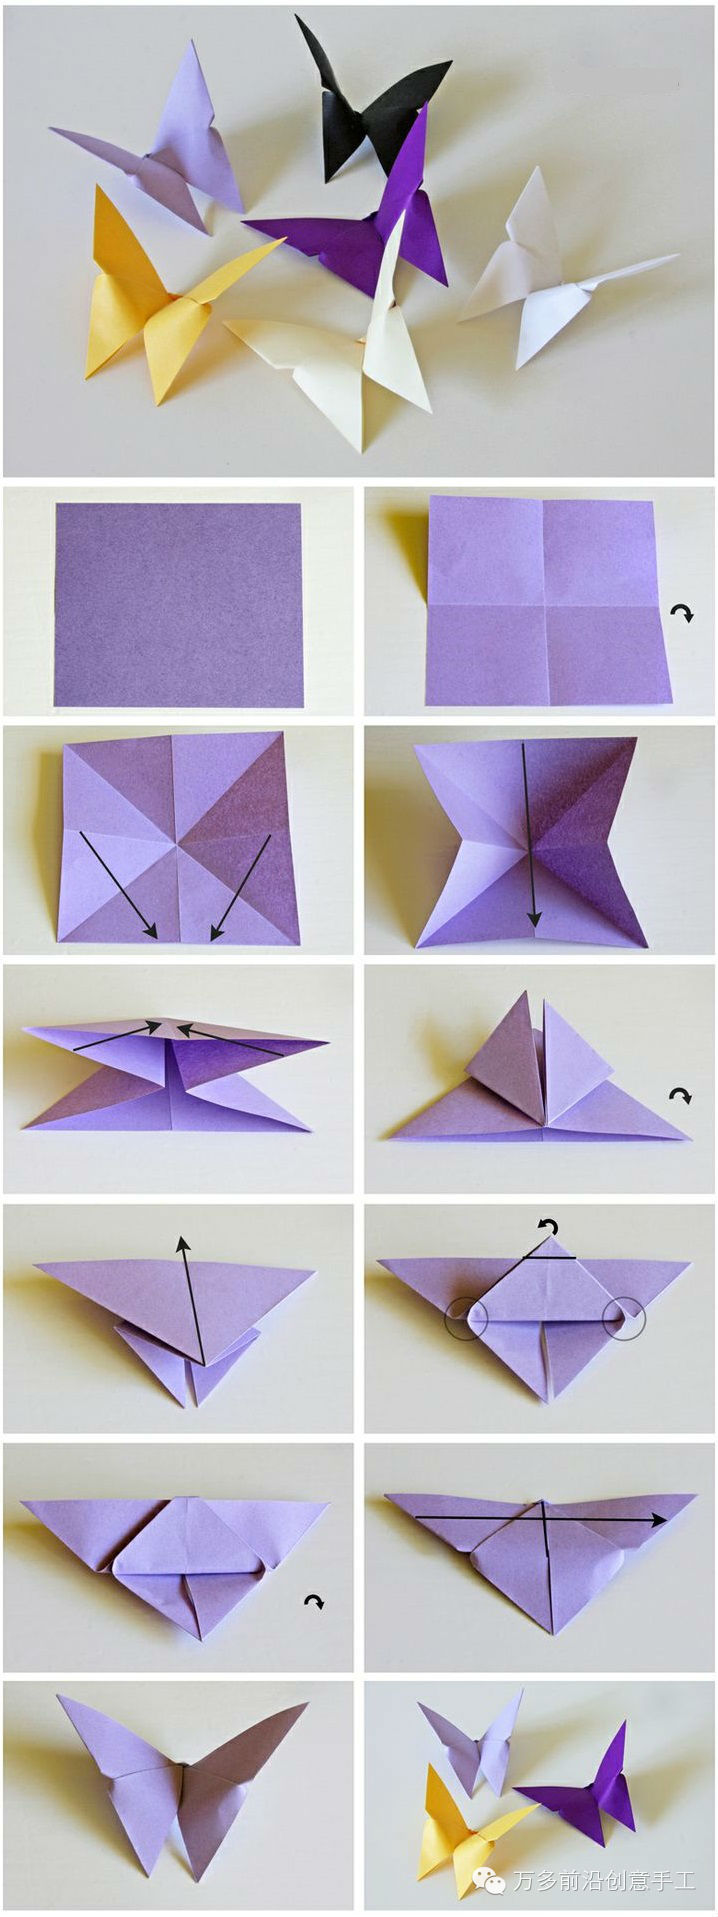 折纸教程:纸蝴蝶